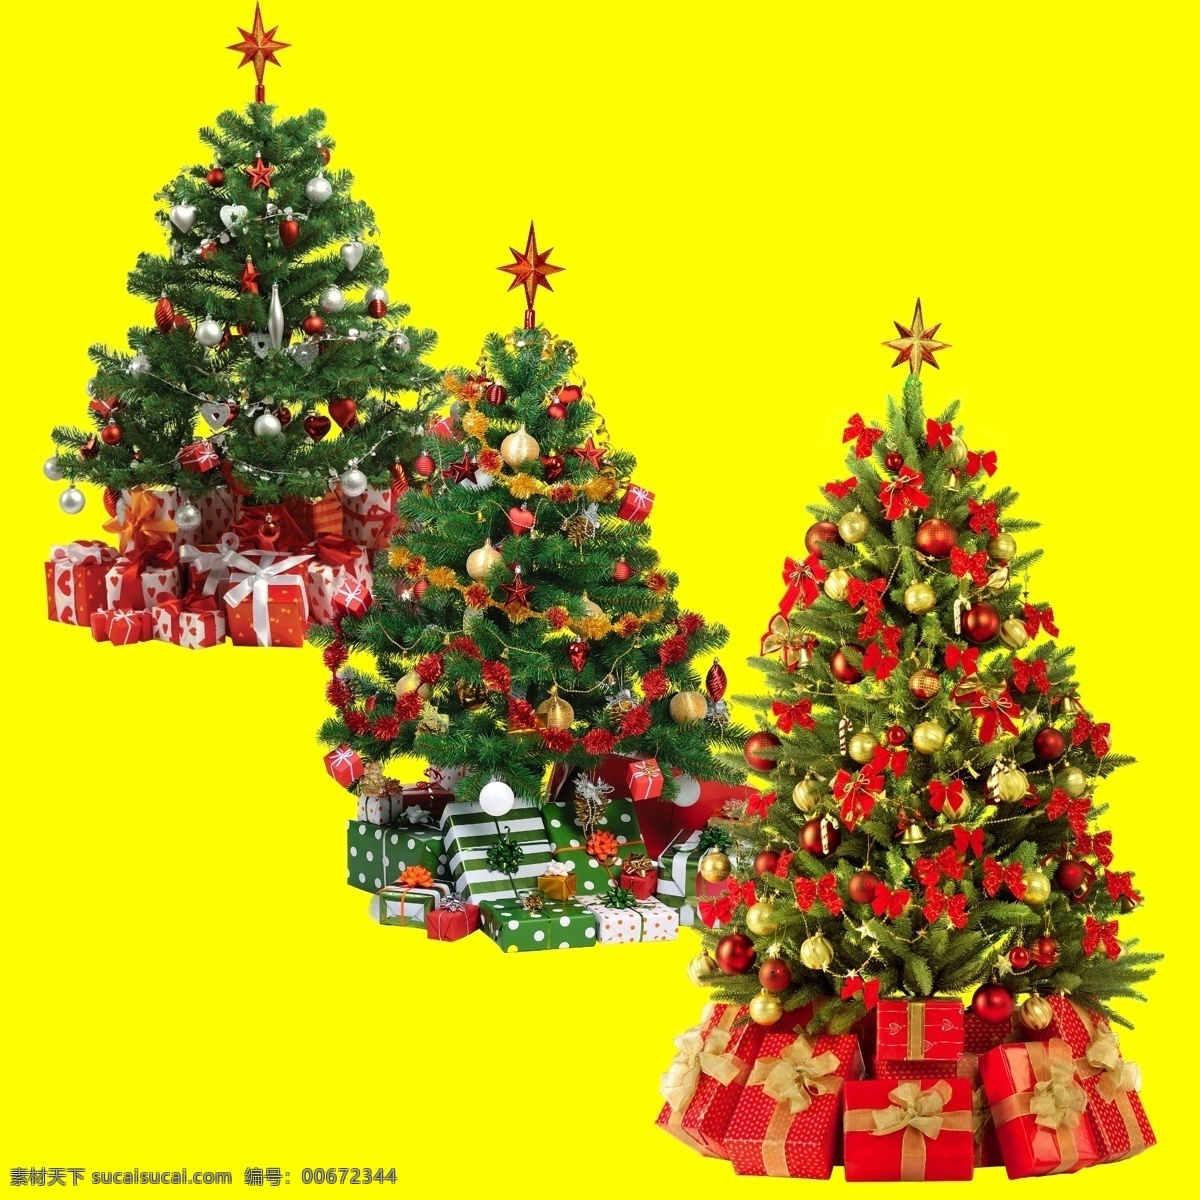 高清圣诞树 礼物 诞树节 高清 诞树元素 松树 礼品 黄 节日 圣诞节 节日素材 源文件